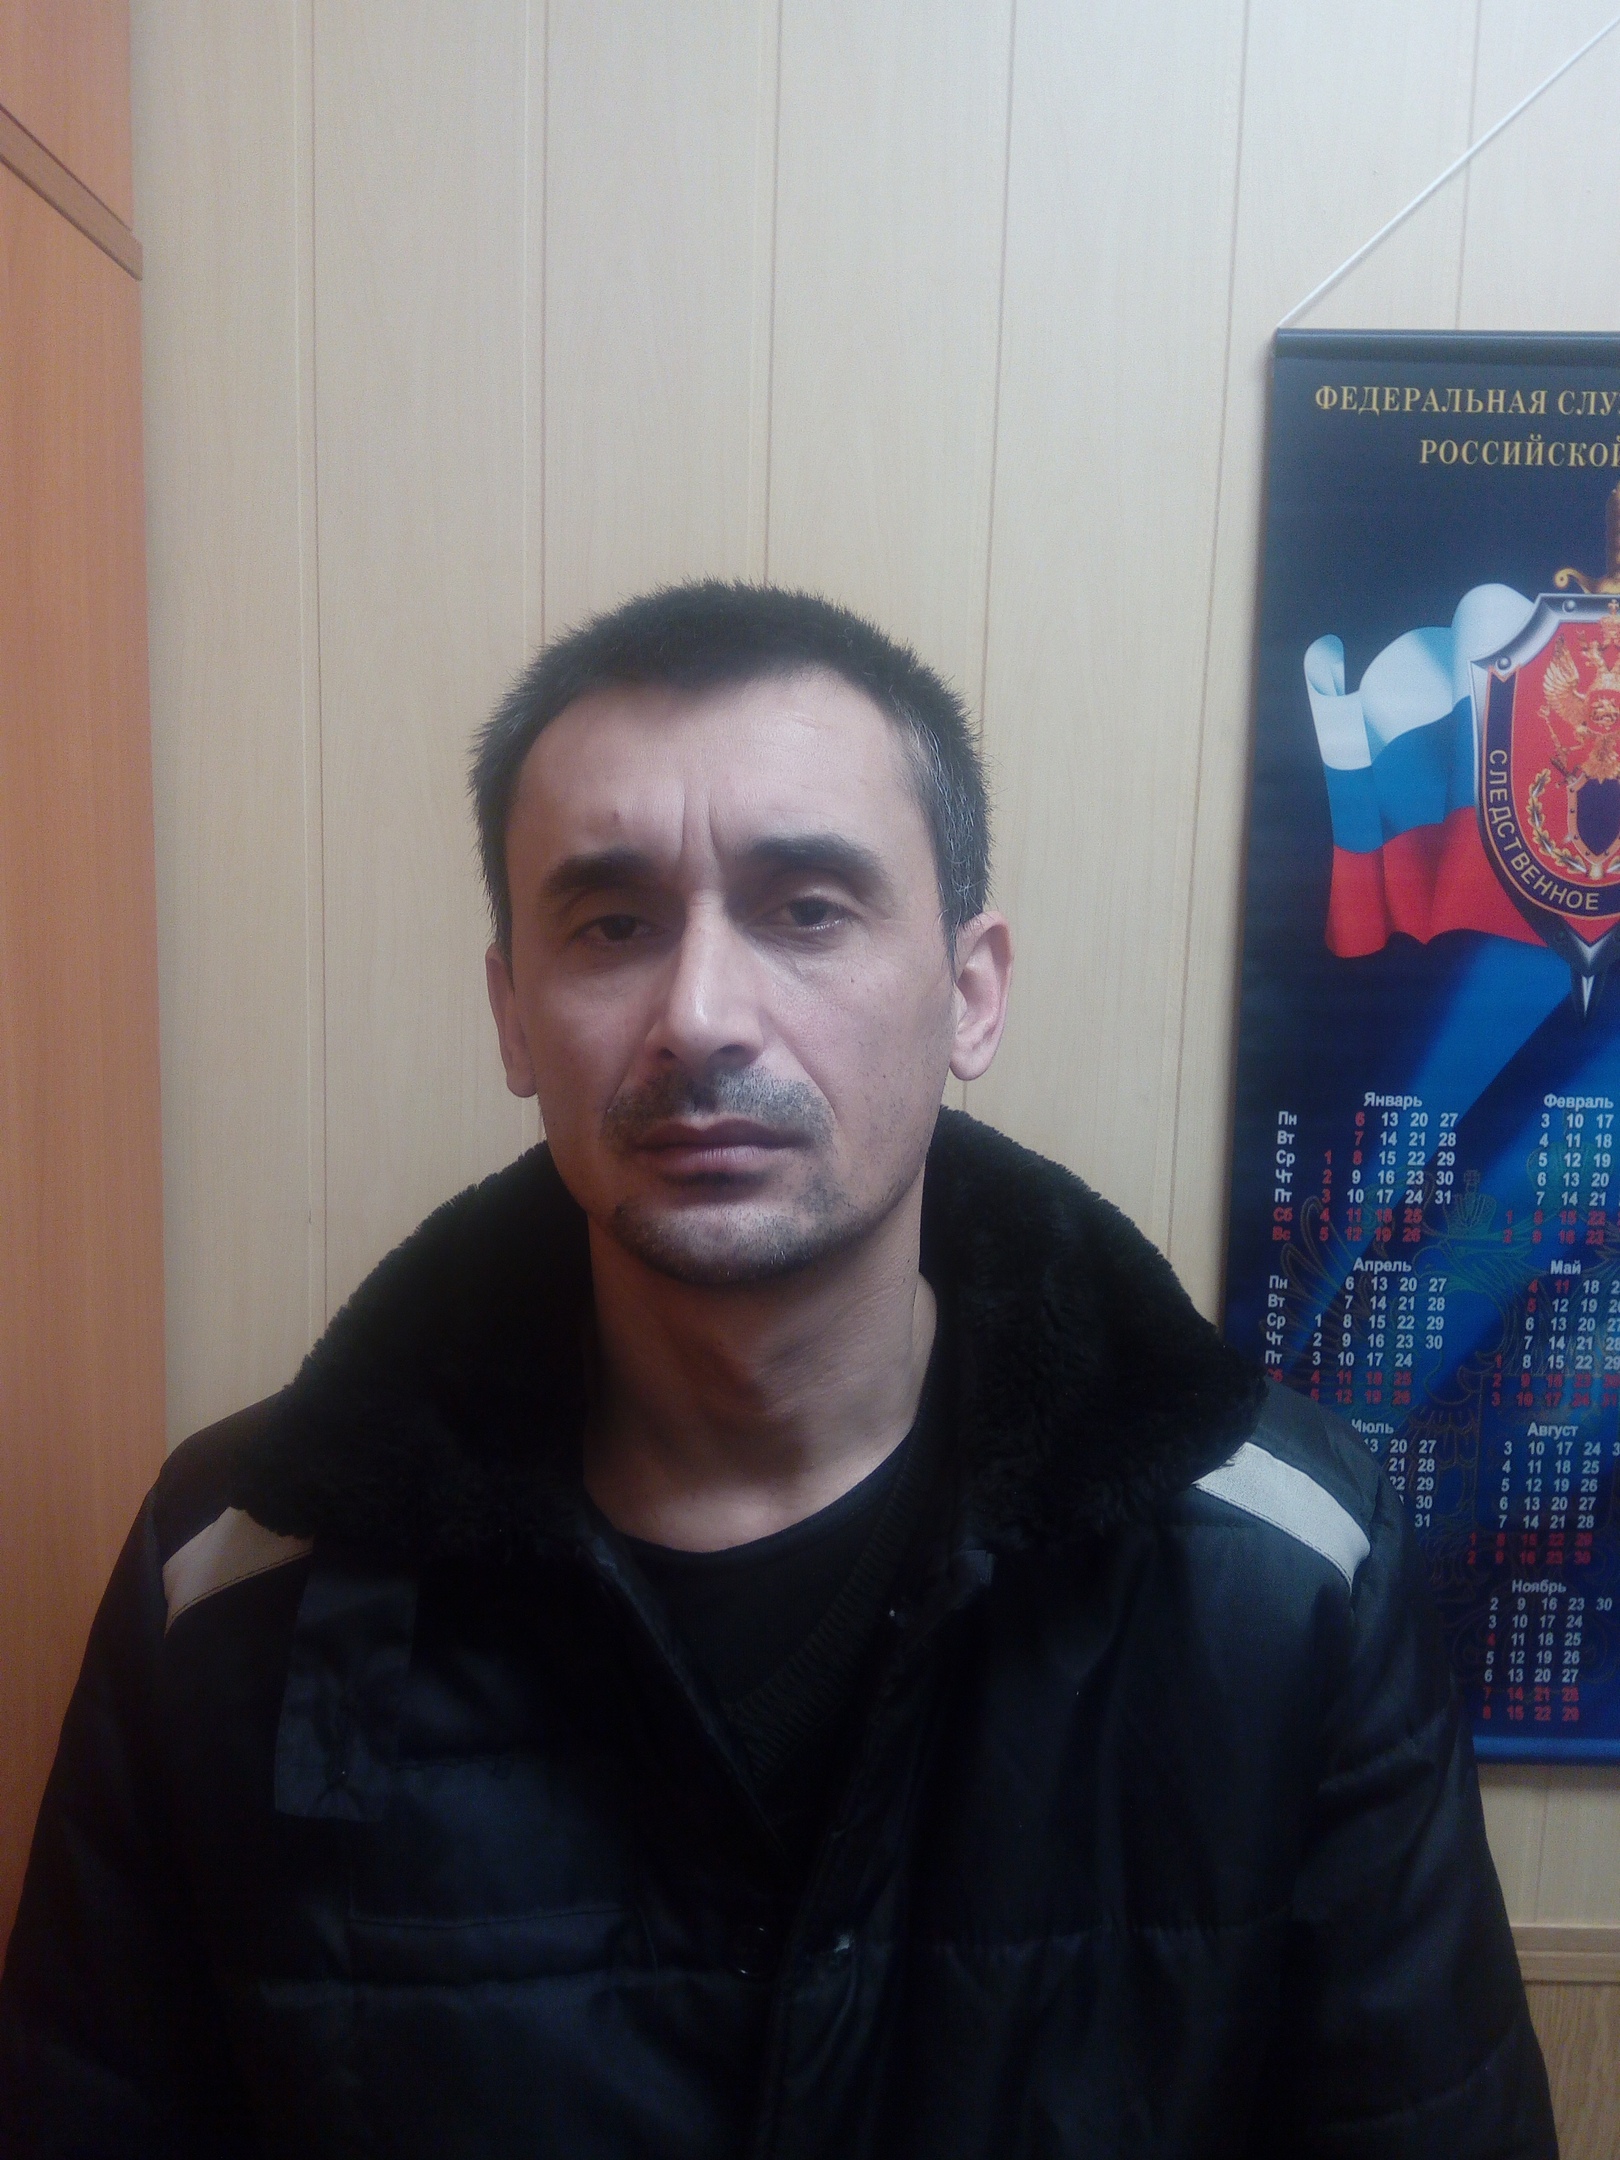 Заключенный из Таджикистана пропагандировал терроризм в Сердобской колонии